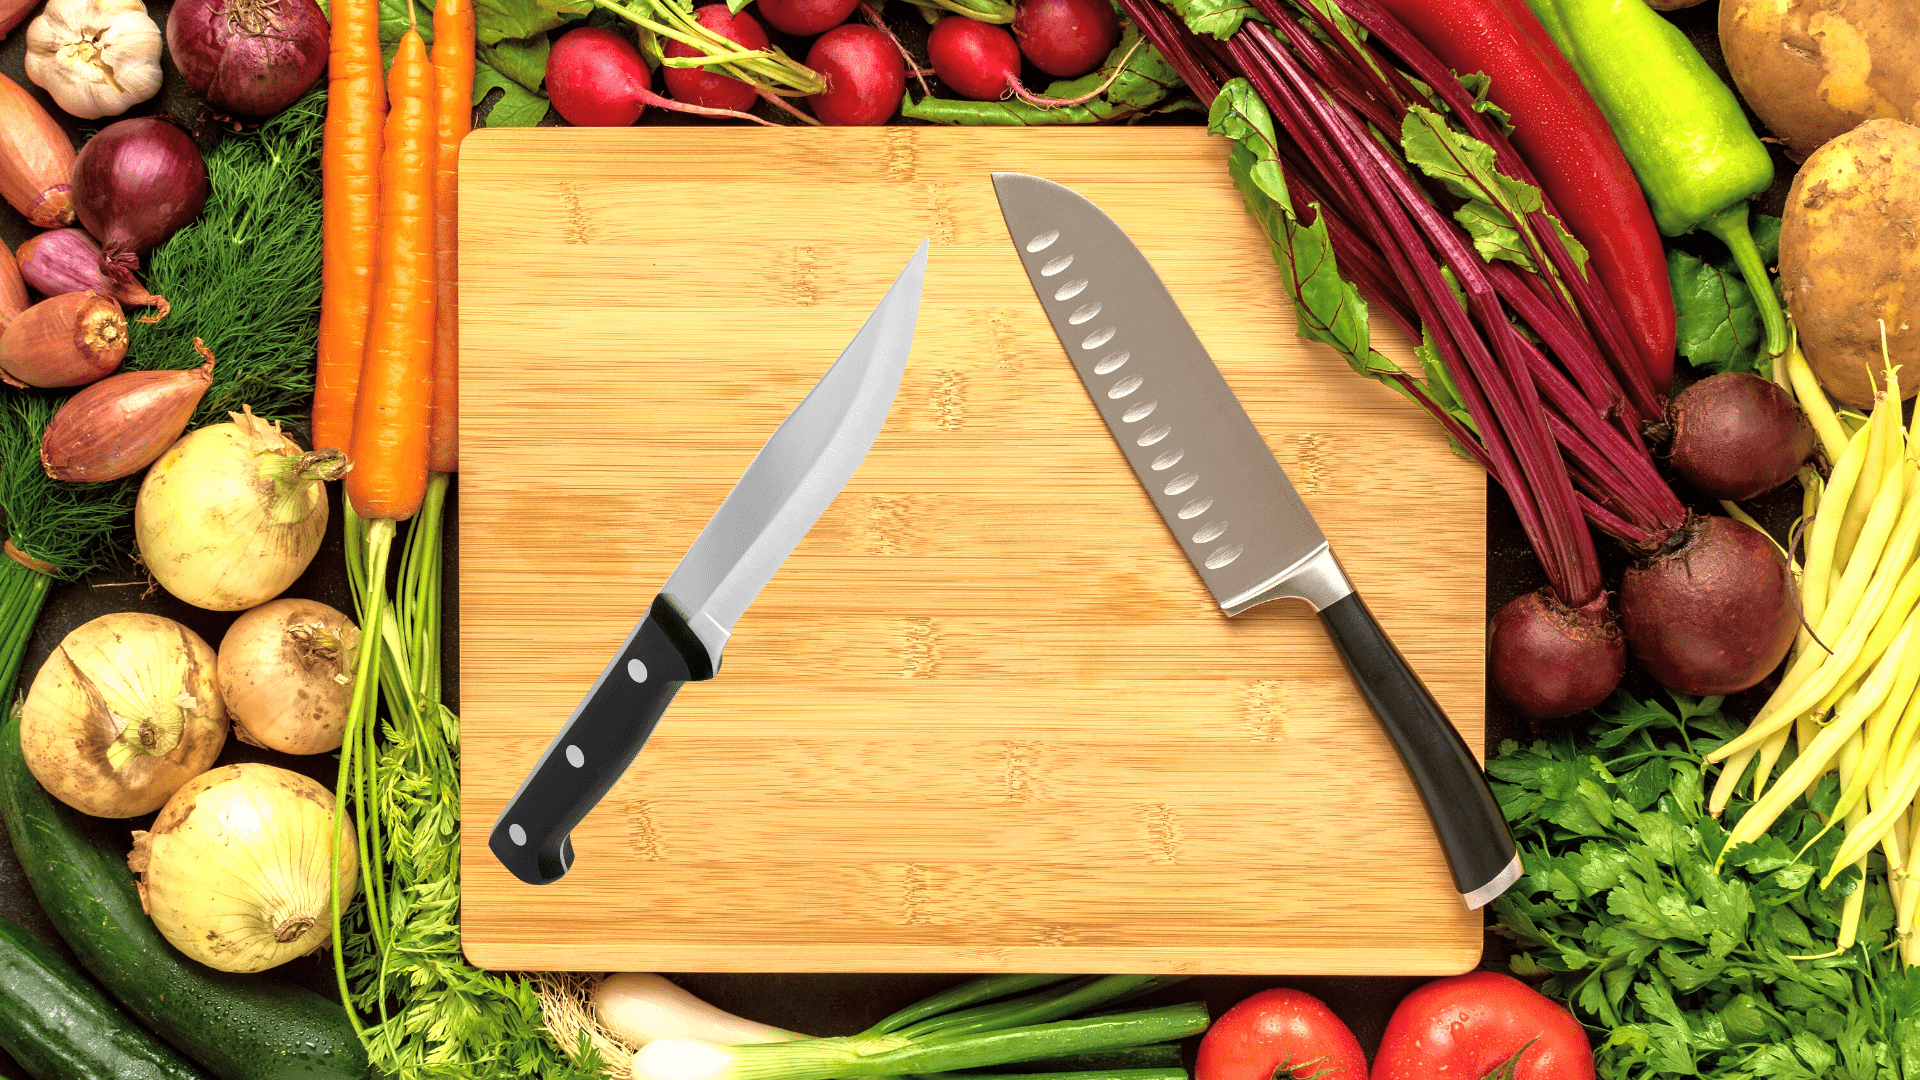 Bunka vs cuchillos santoku | Cómo se comparan [y cuál comprar]